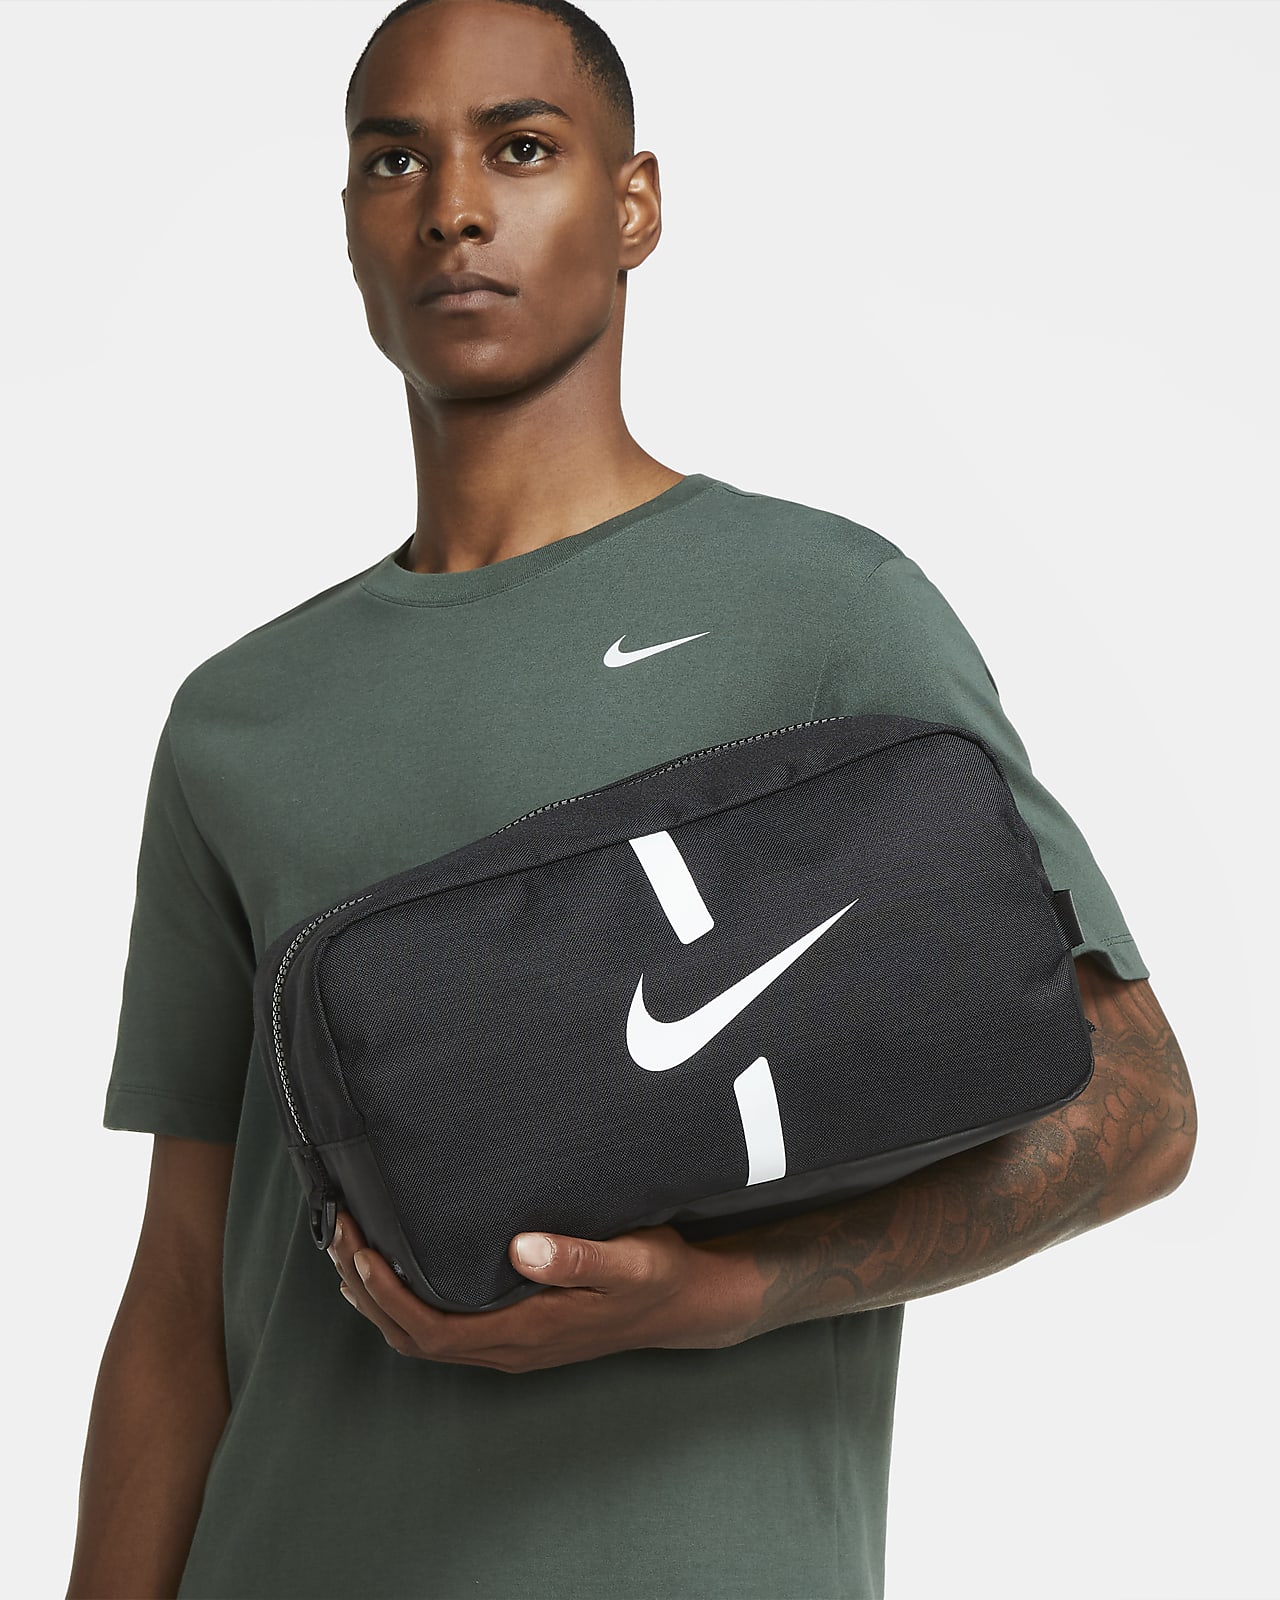 Nike Academy Football Shoe Bag. Nike LU